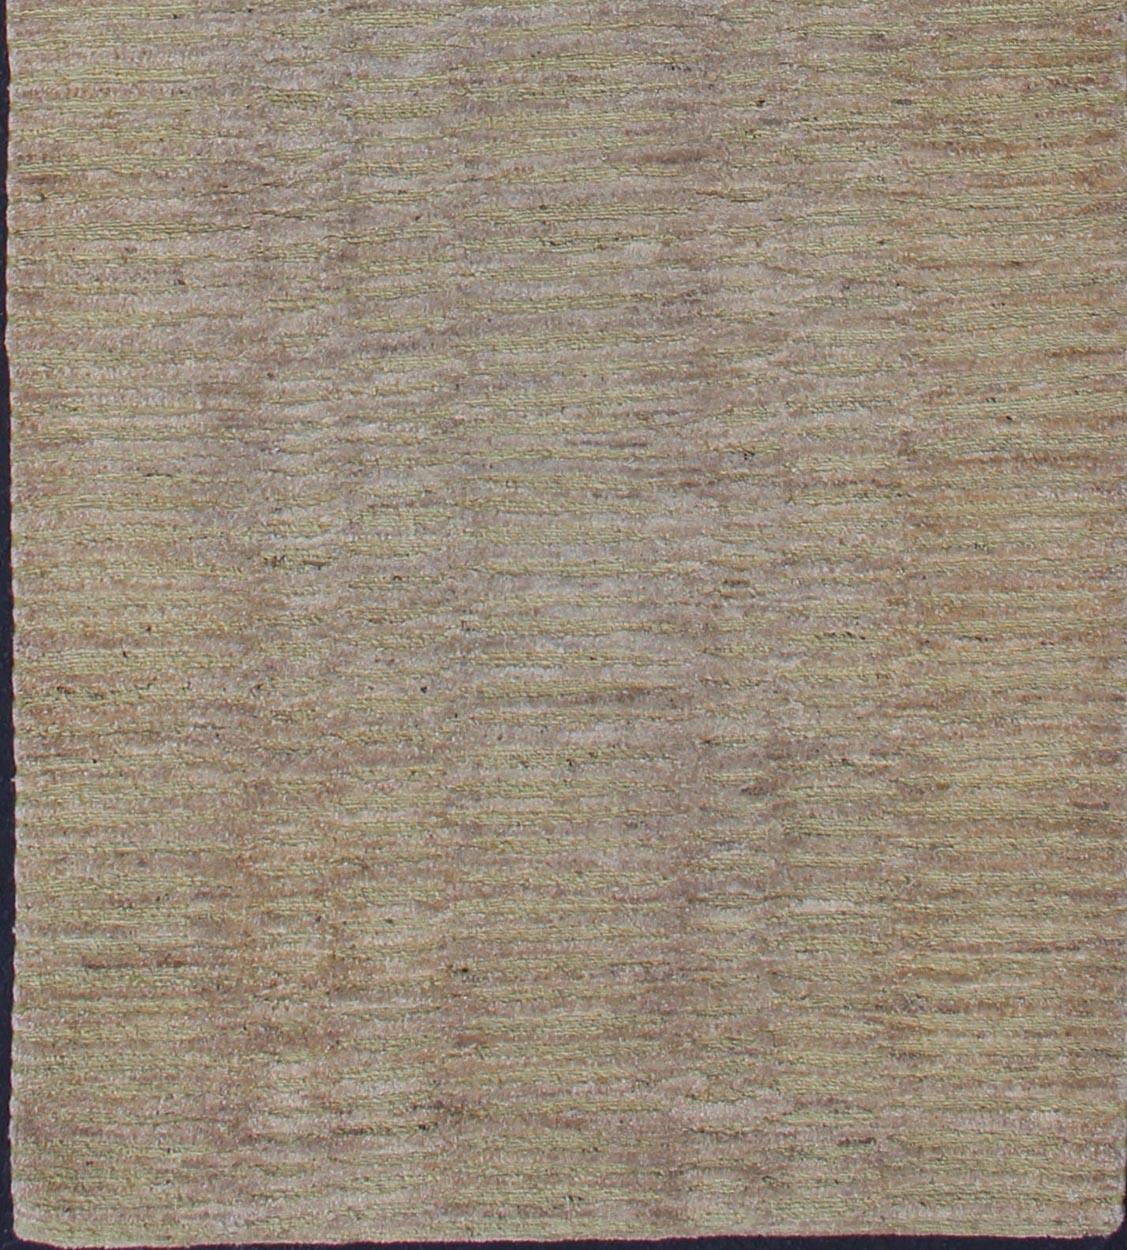 Moderner tibetischer Teppich mit buntem Muster, Teppich 19-0840, Herkunftsland / Typ: Nepal / Modern

Dieser Teppich aus Nepal ist aus Wolle und Seide gefertigt und zeigt ein Allover-Muster in verschiedenen Tönen von Hellbraun und Taupe.
Maße: 3'1 x